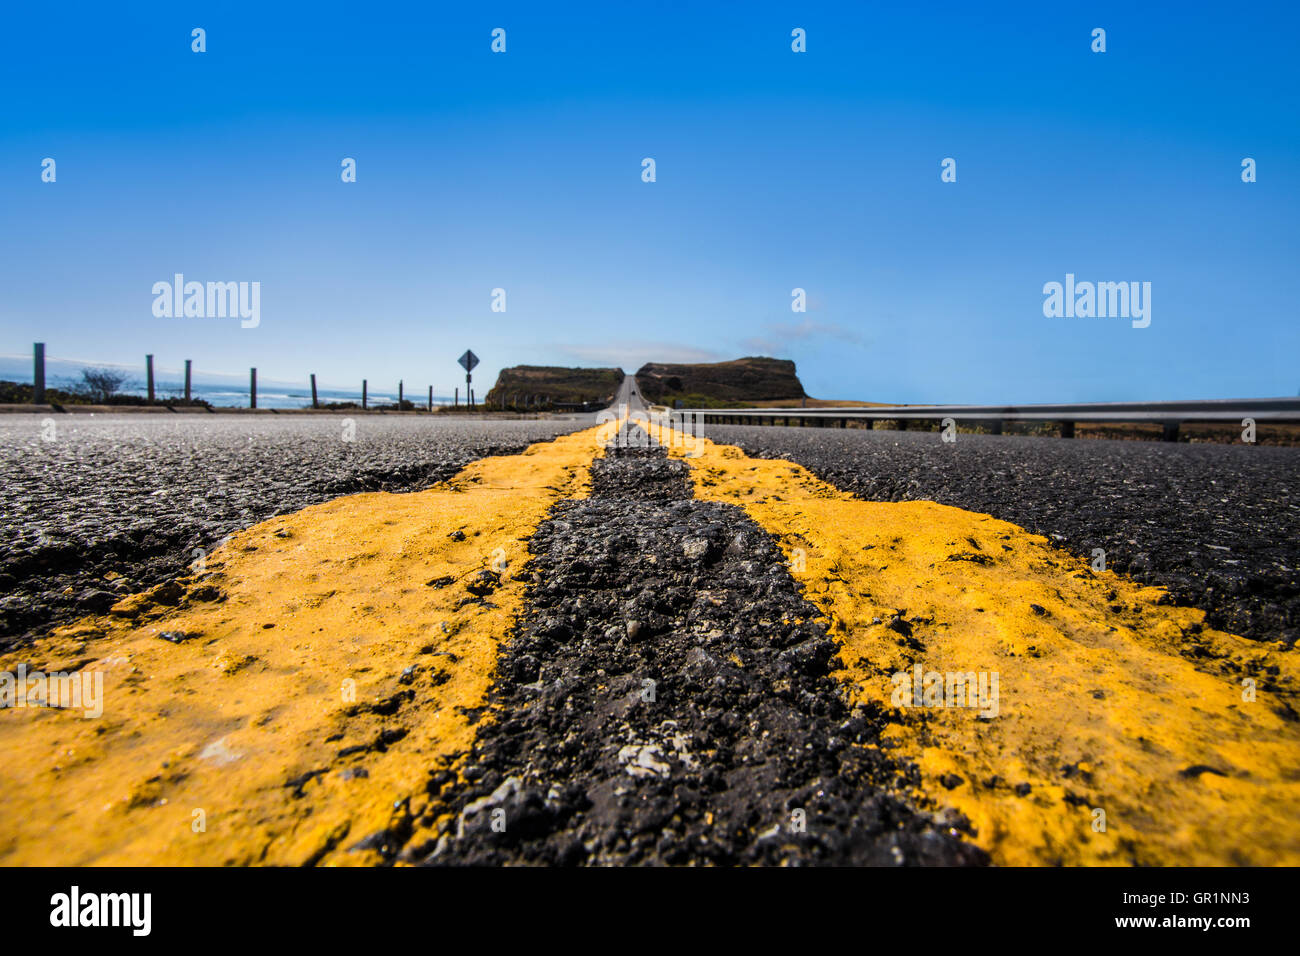 Strada giallo linee divisorie su asfalto da basso in prospettiva e punto di fuga Foto Stock